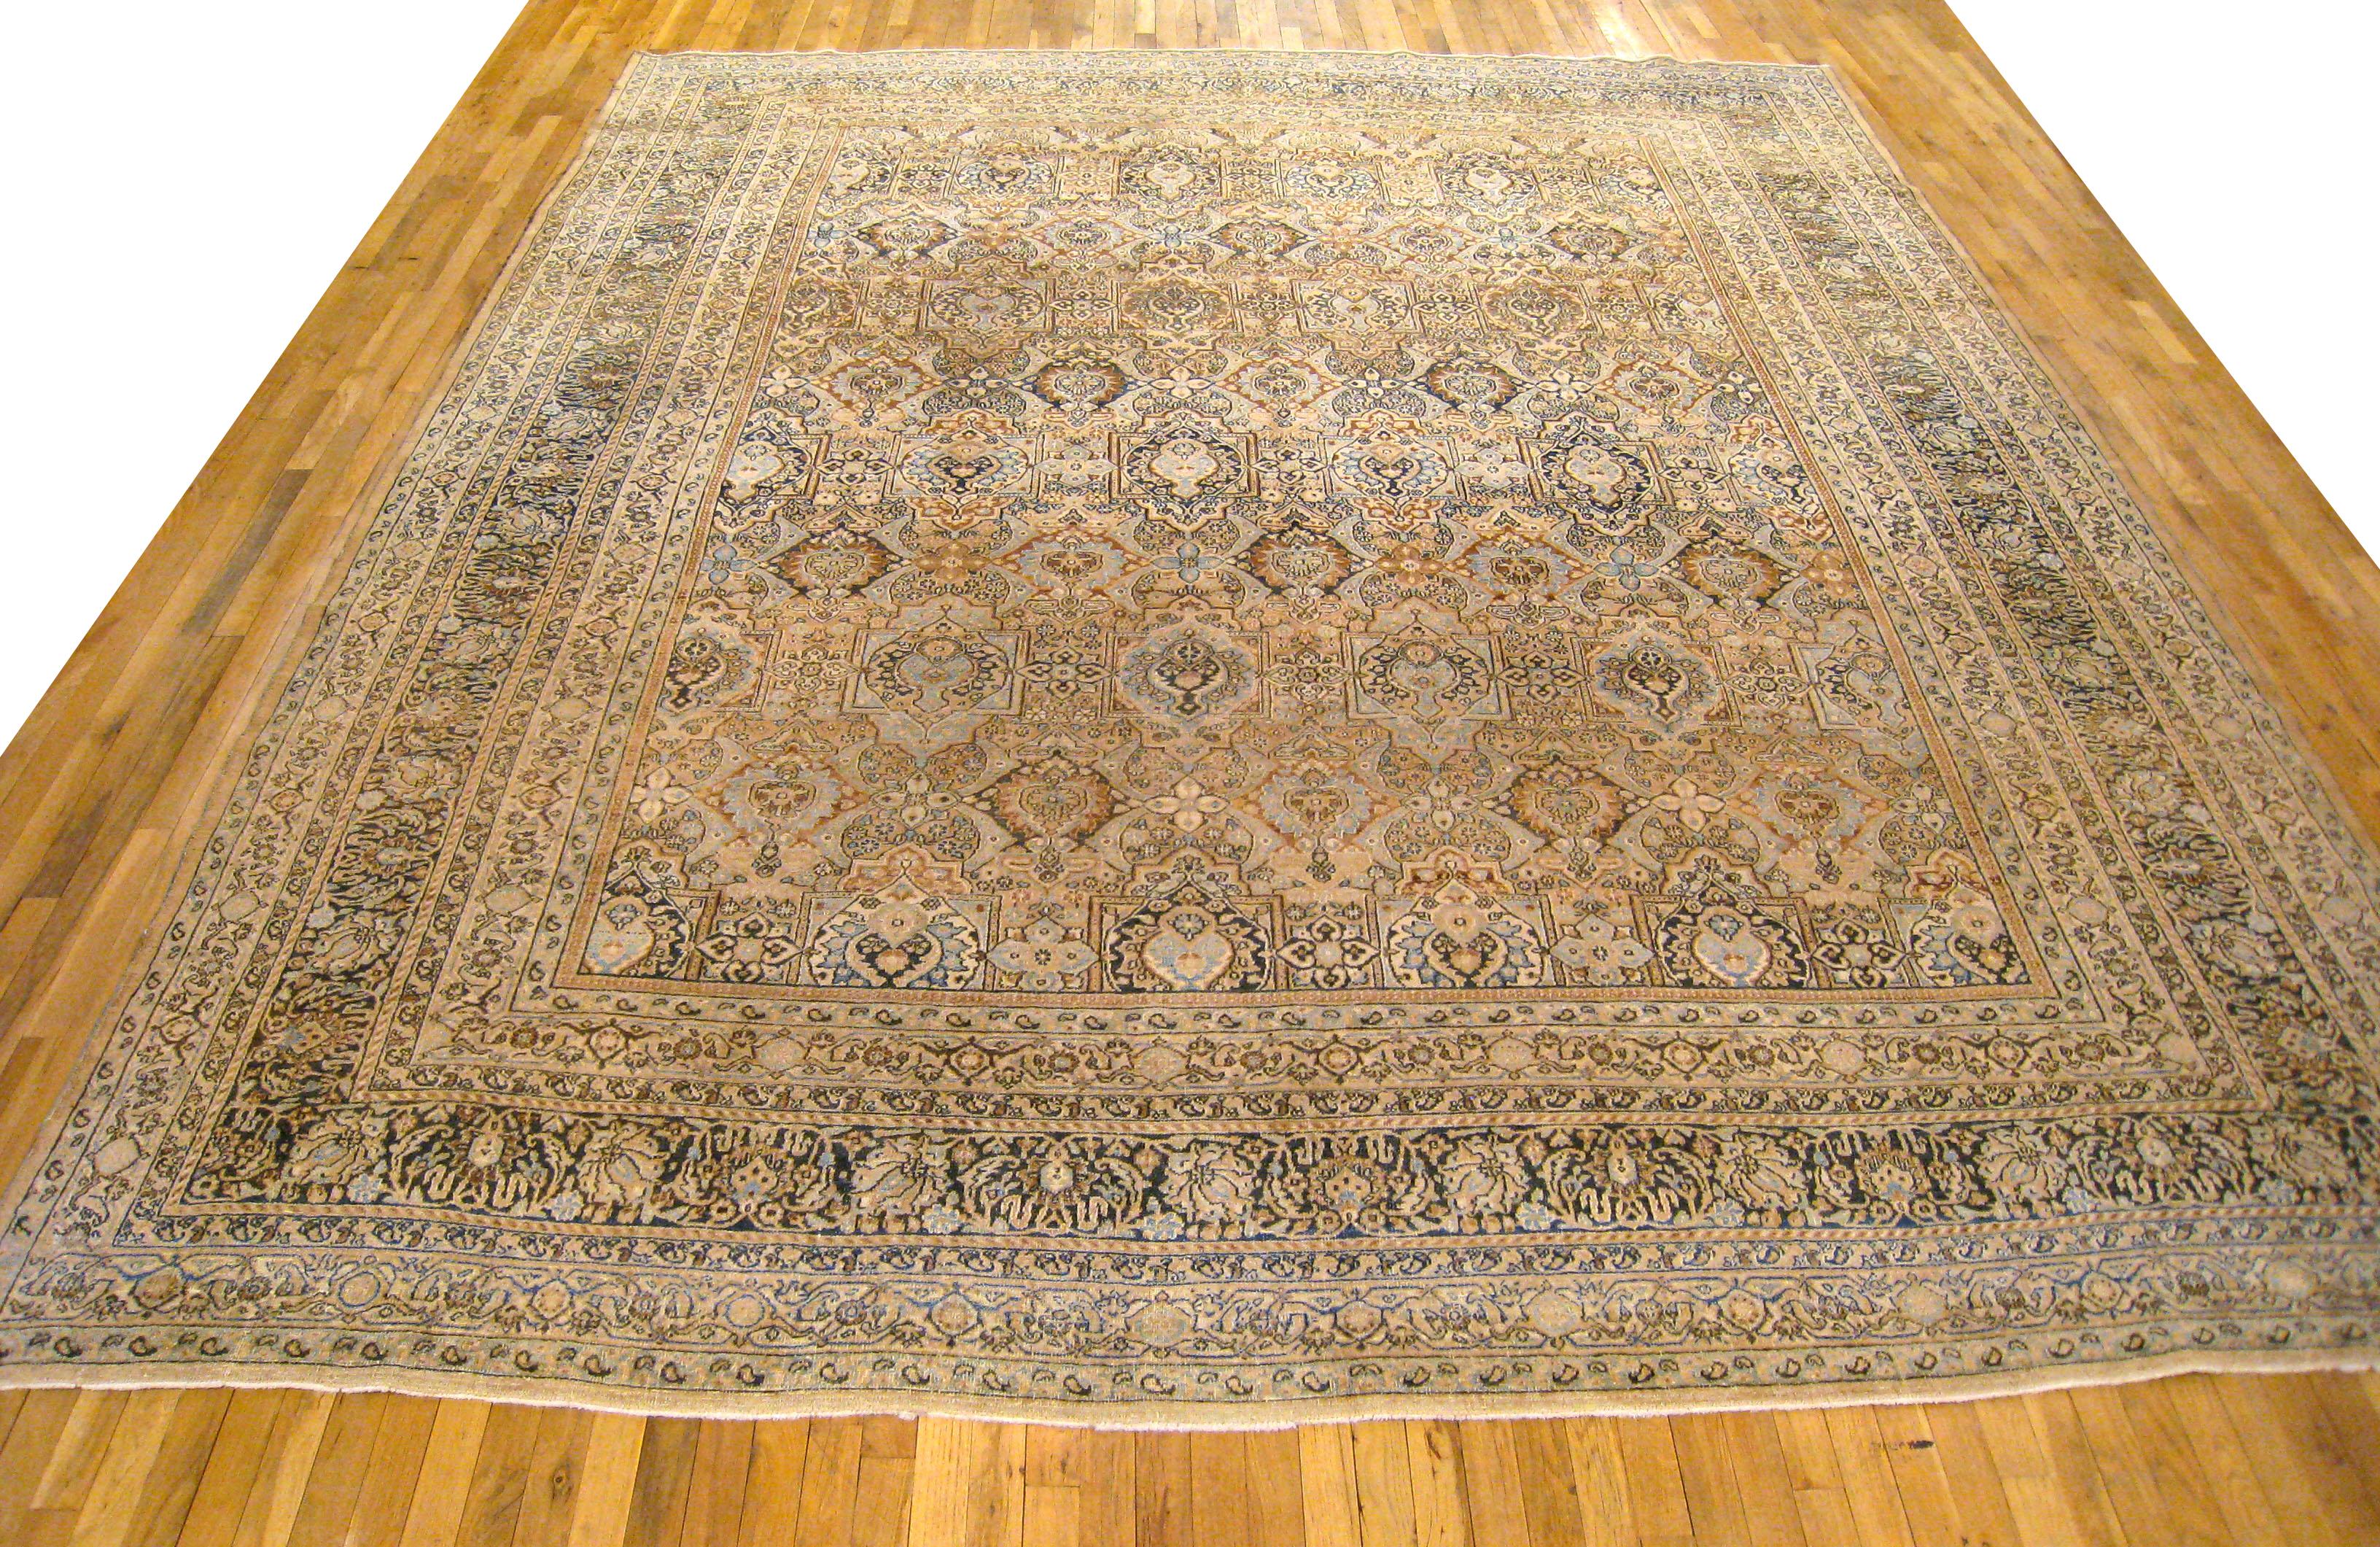 Antiker persischer Maschenteppich, Großformat

Ein antiker persischer Maschenteppich, Größe 13'4 x 10'7, um 1910. Dieser hübsche, handgewebte geometrische Teppich weist florale Elemente auf, die sich über das gesamte braune Feld verteilen. Das